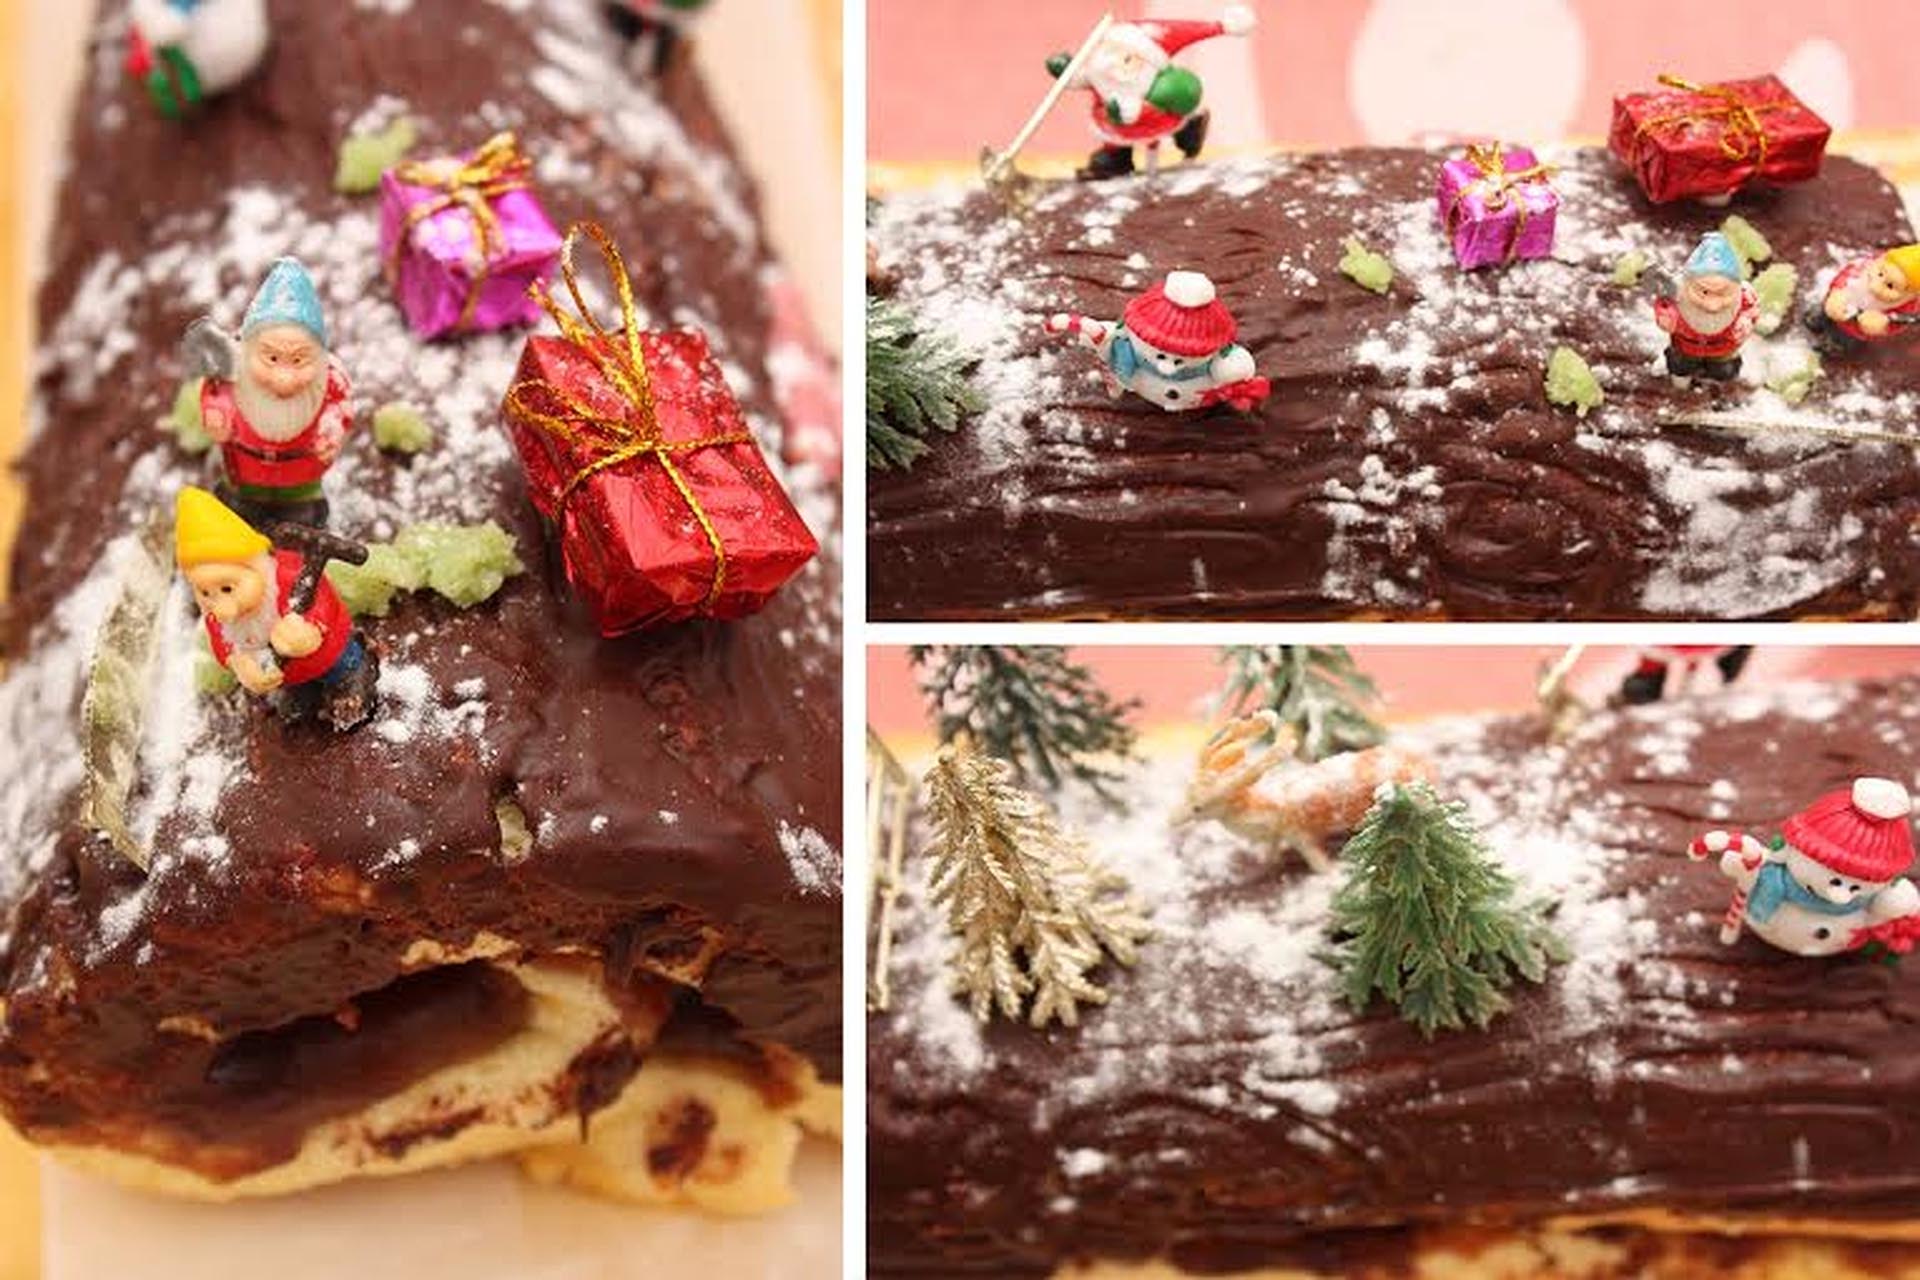 Bûche de Noël es un postre francés clásico también conocido comúnmente como pastel de troncos de Navidad (Istock)